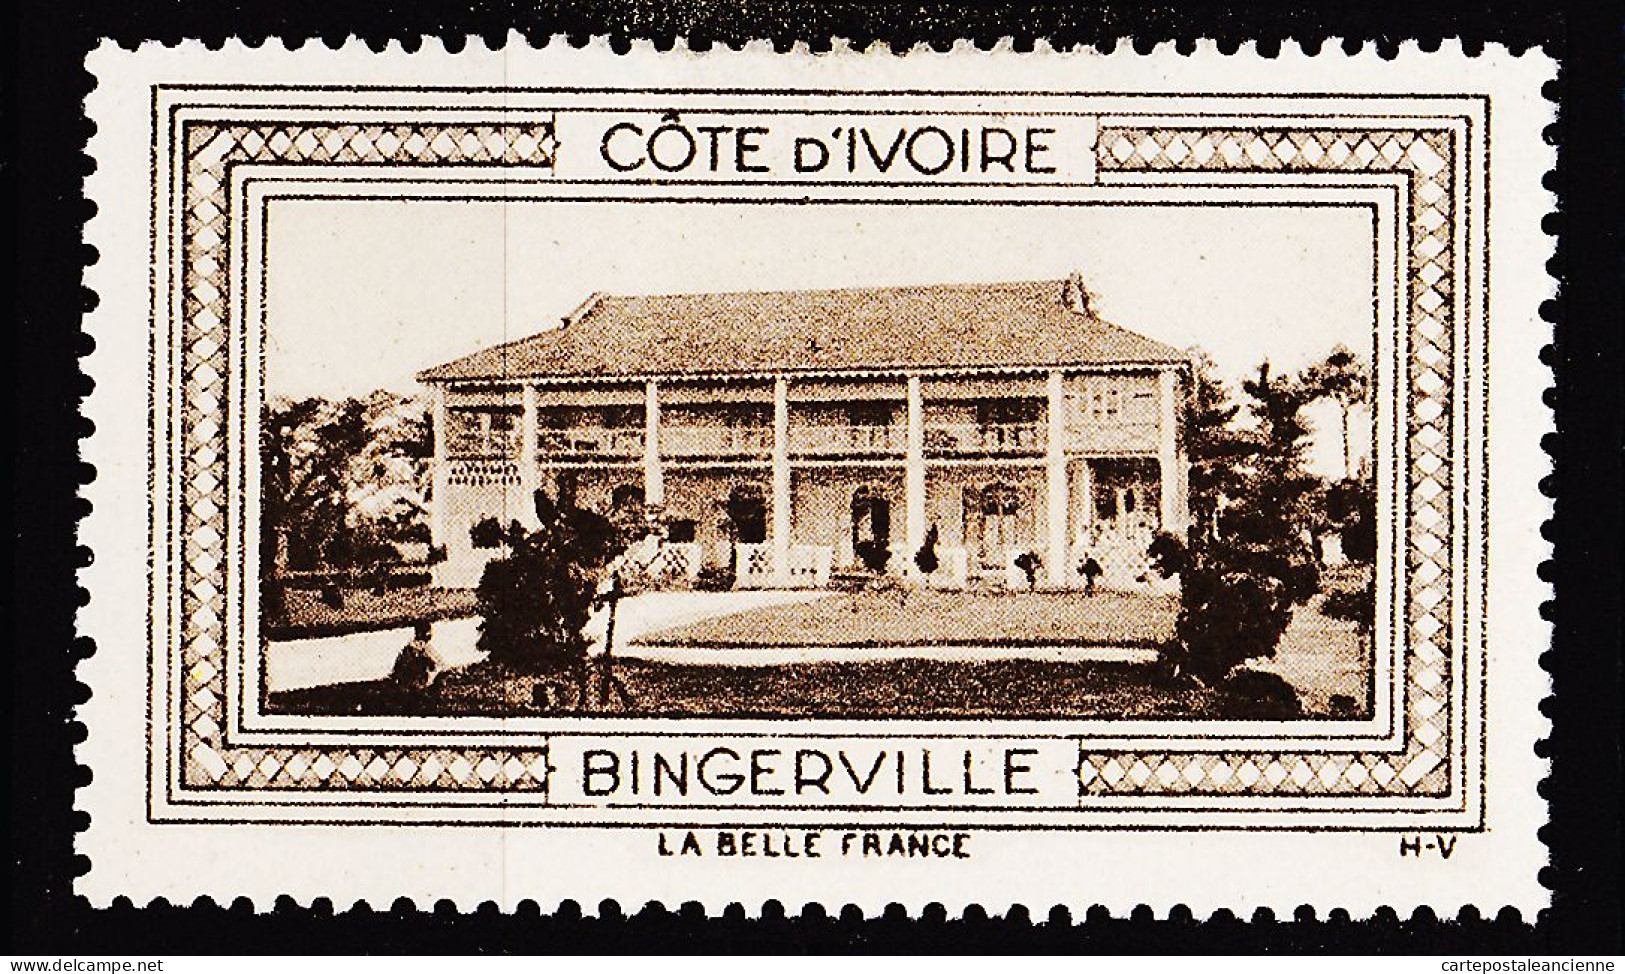 12944 ● BINGERVILLE COTE D'IVOIRE Vignette De Collection LA BELLE FRANCE 1925s H-V Erinnophilie - Turismo (Viñetas)